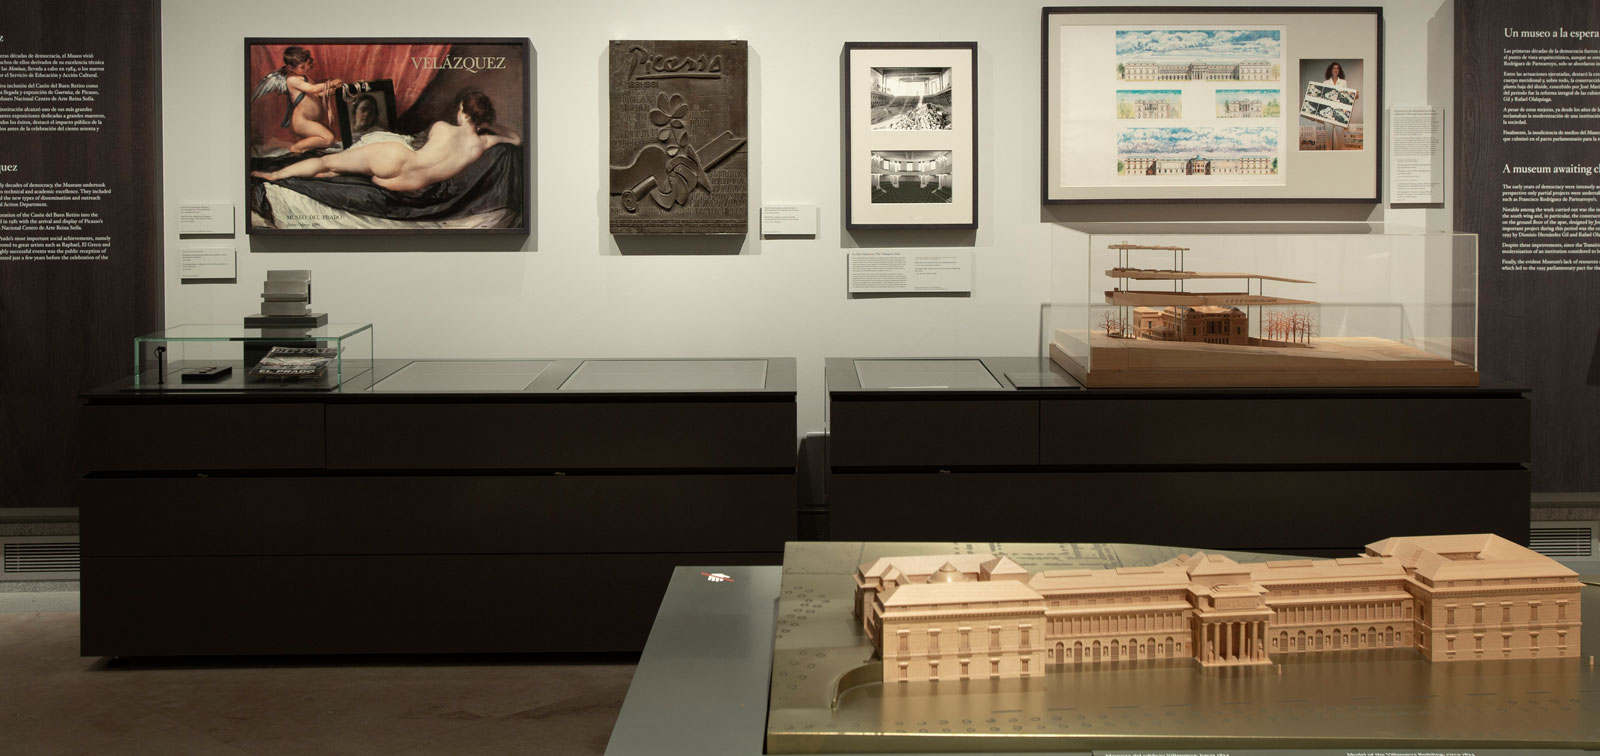 Historia del Museo del Prado y sus edificios. Programa y montaje de la exposición